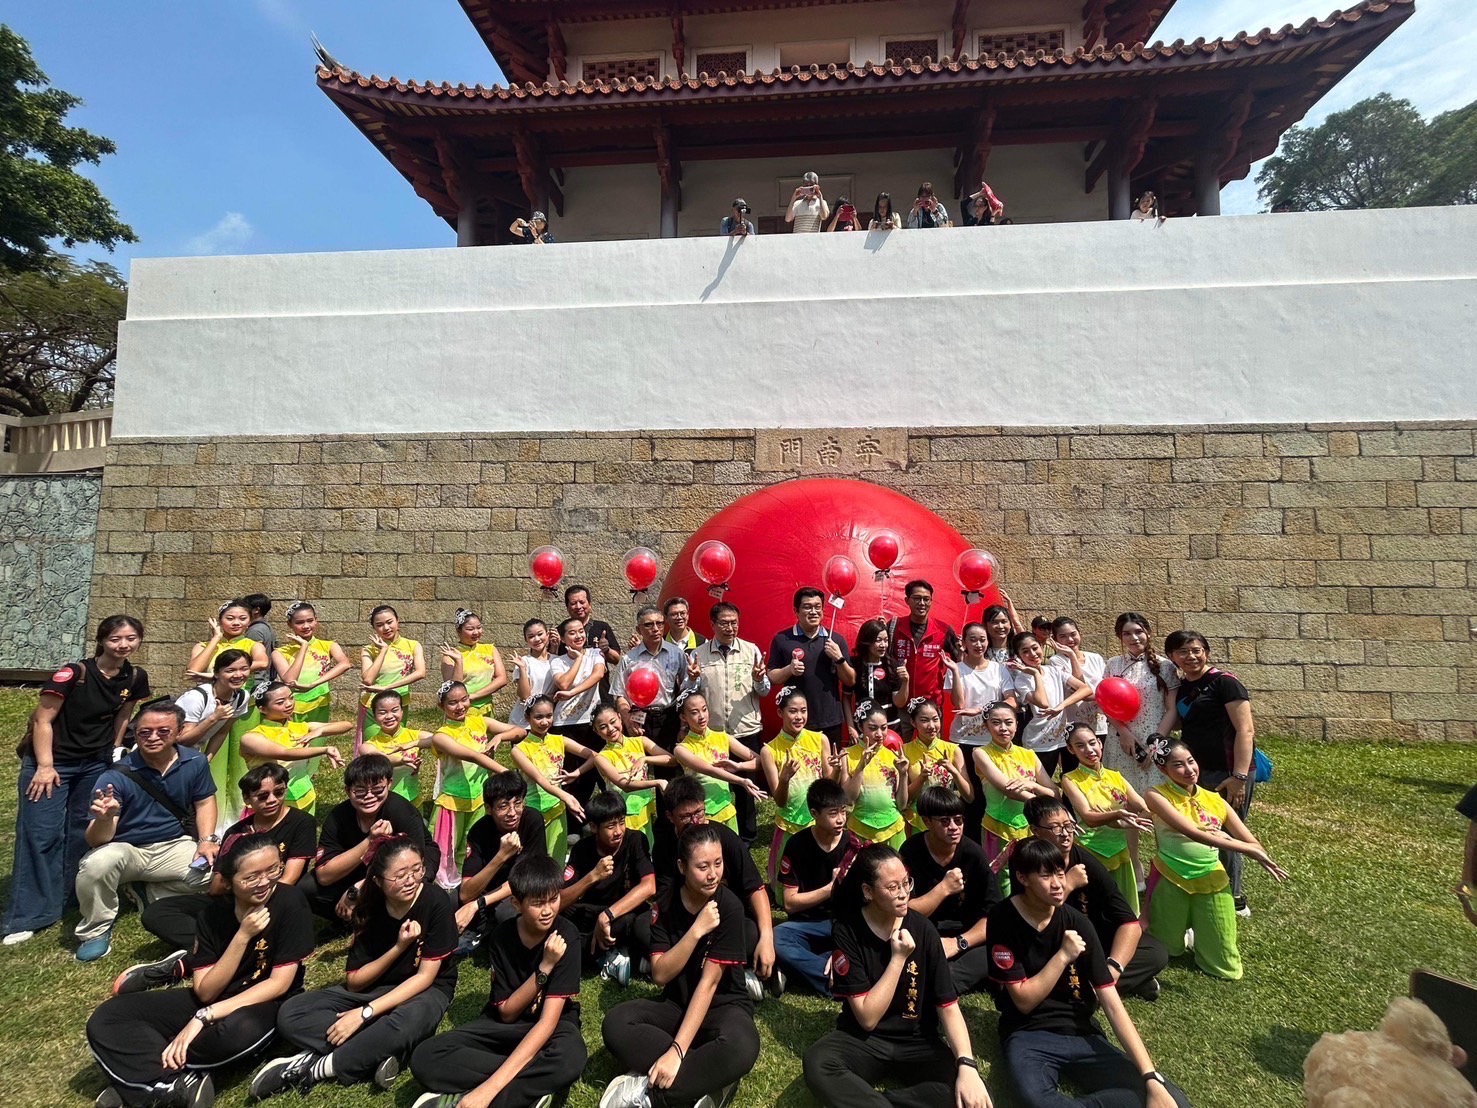 「追球」熱潮席捲臺南！巨大紅球藝術行動吸引十多萬人參與